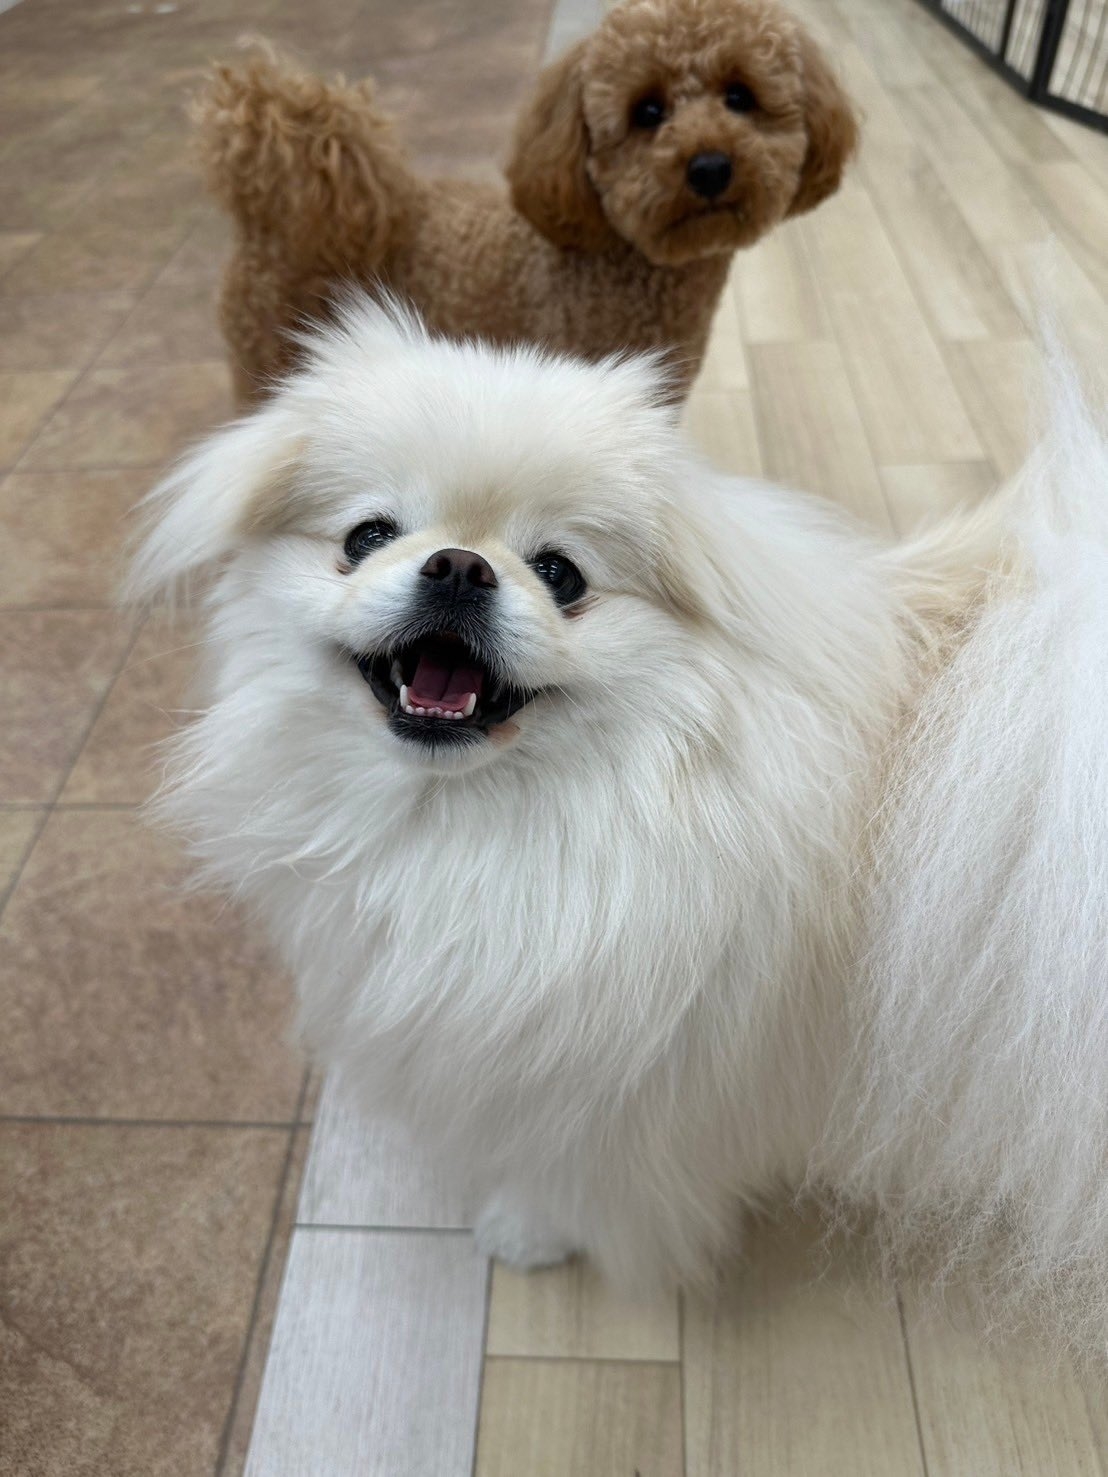 二匹の小型犬がカメラに向かっている。前方の白い犬は口を開け、後ろの茶色い犬は注視している。